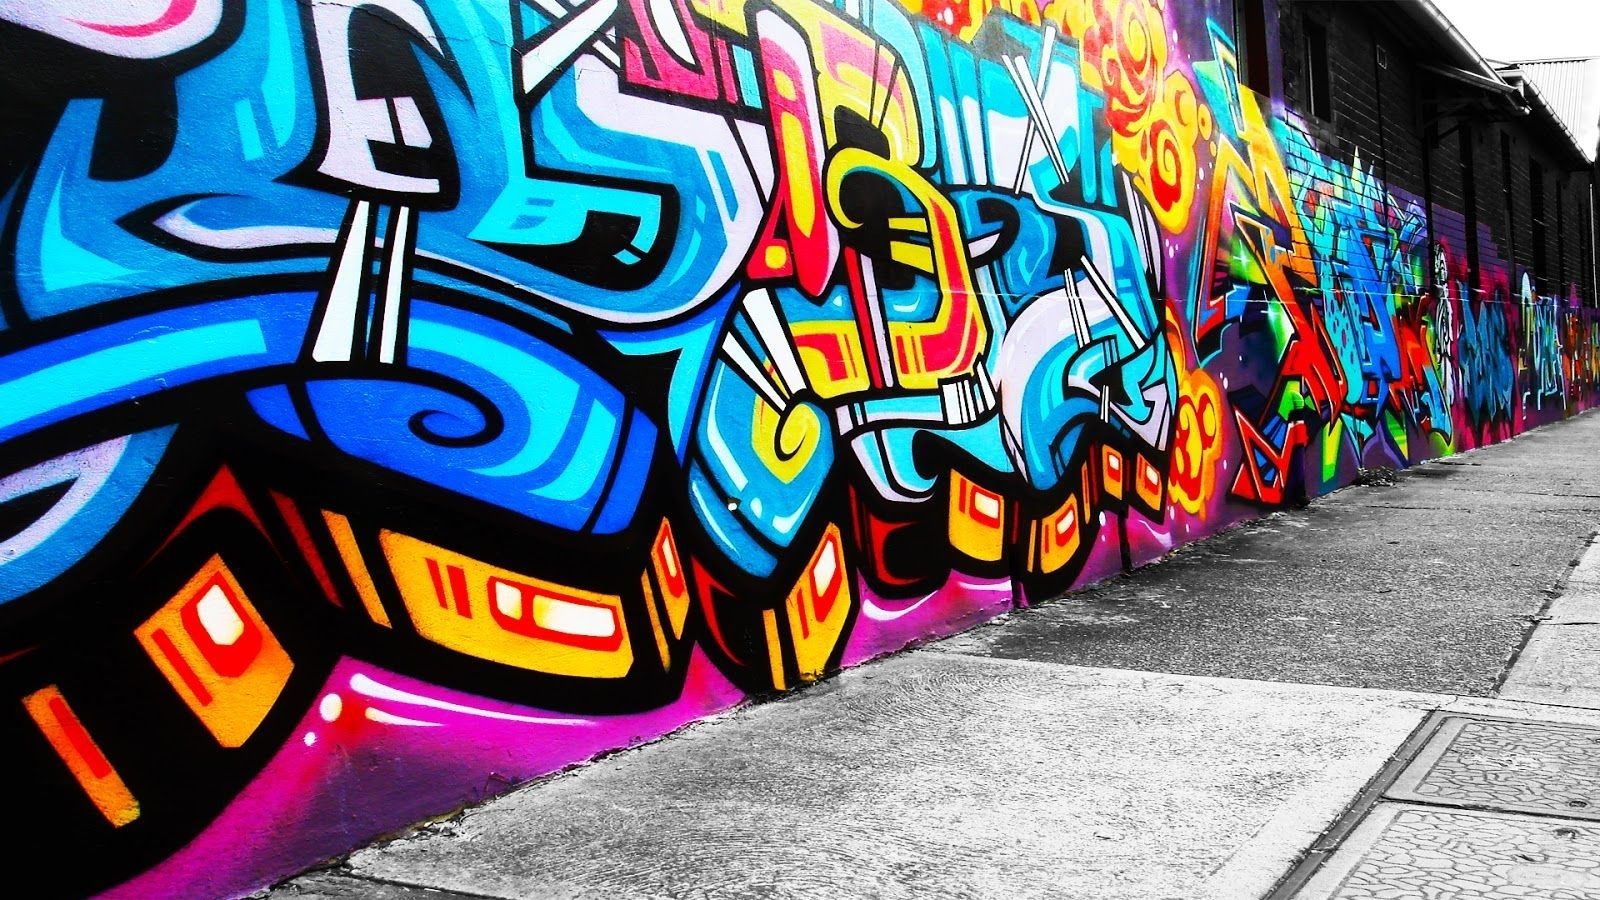 Graffiti Wall Art Background Wallpaper | Wall Art | Pinterest In Best And Newest Graffiti Wall Art (Gallery 2 of 20)